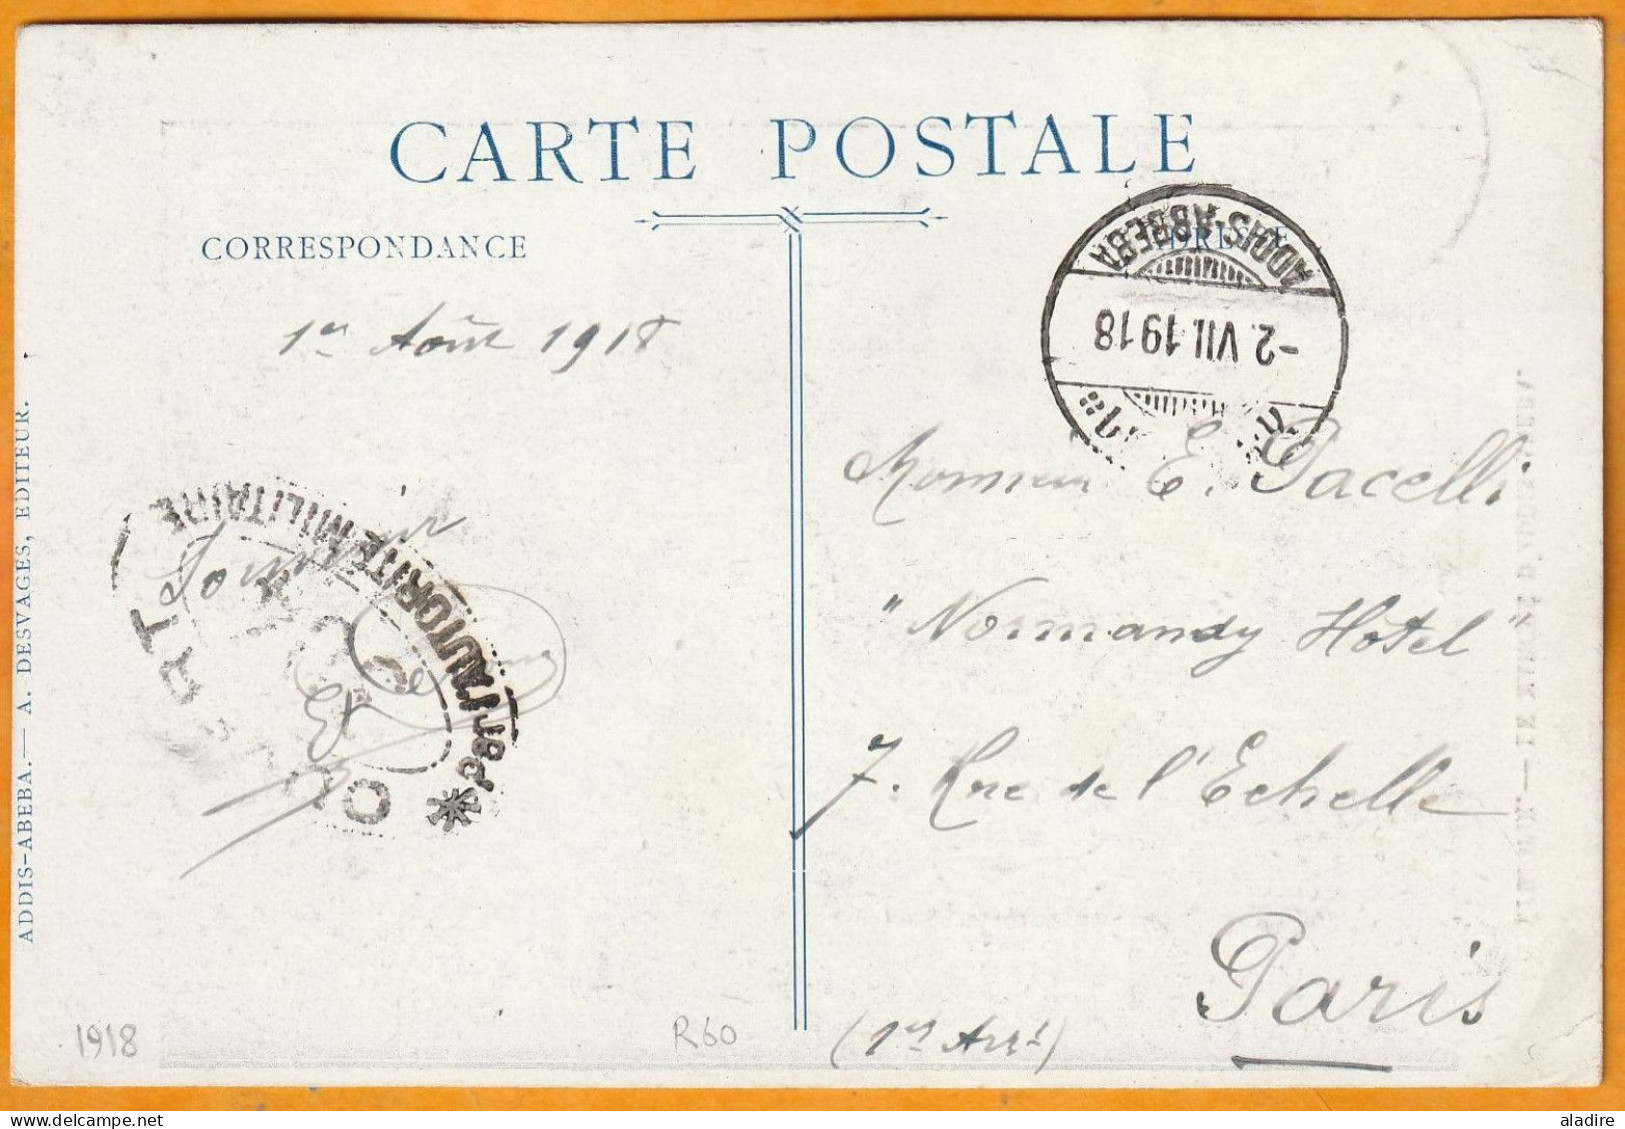 1918 - Carte Postale D'ADDIS ABBEBA, Ethiopie Vers PARIS, France - Timbre 1/2 Guerche Seul - Censure - Ethiopie